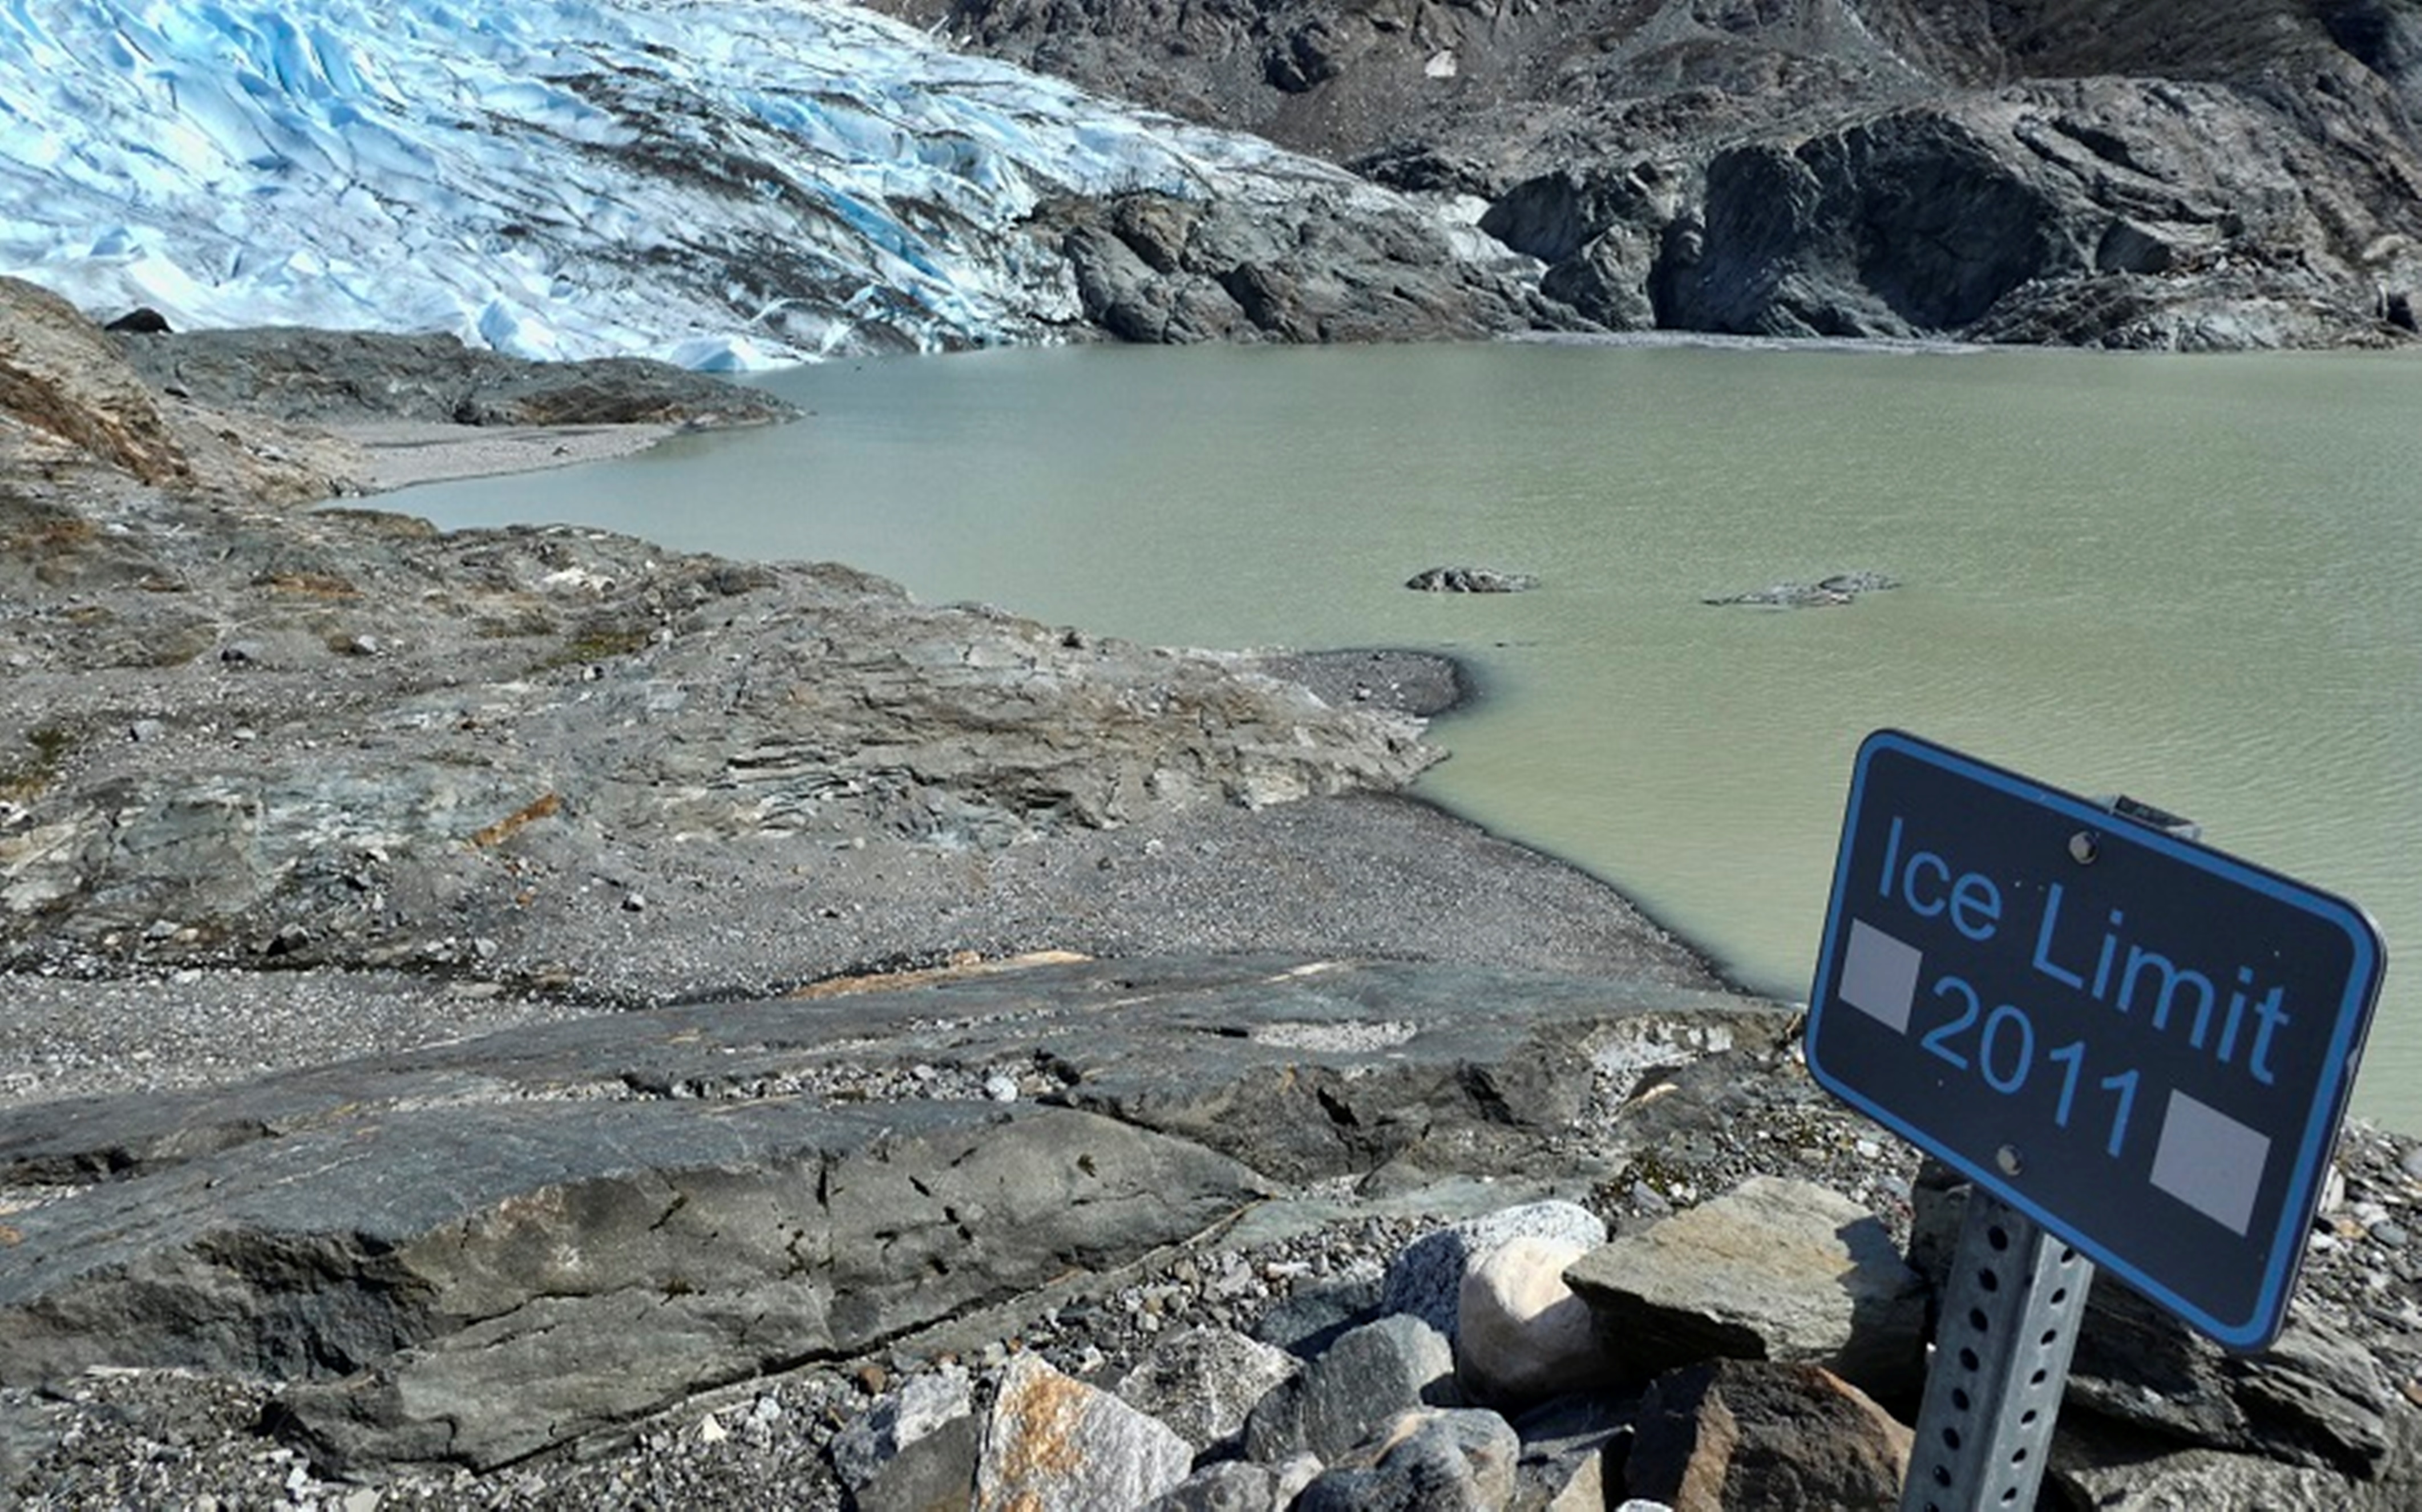  Alarma: Los Glaciares se derriten a marchas forzadas. ¿Alguien escucha?